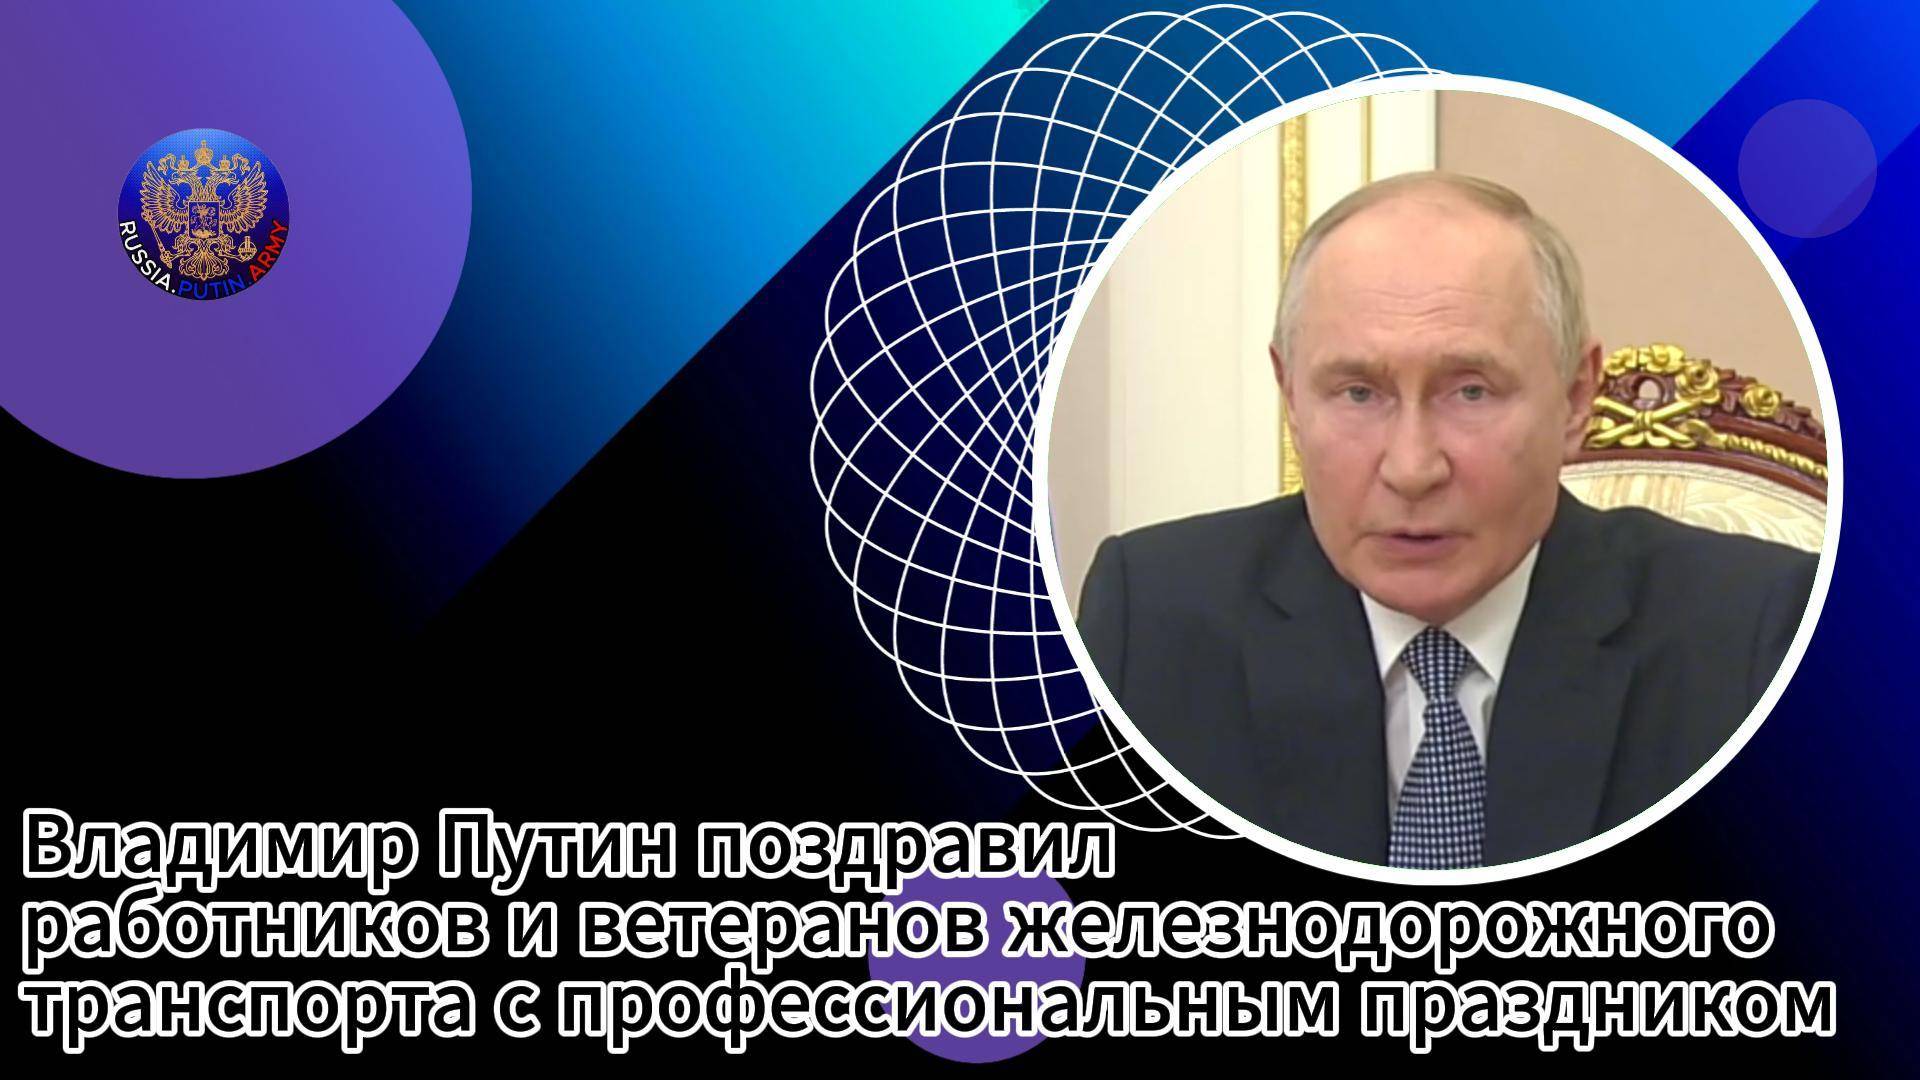 🎆 Владимир Путин поздравил работников и ветеранов железнодорожного транспорта с праздником